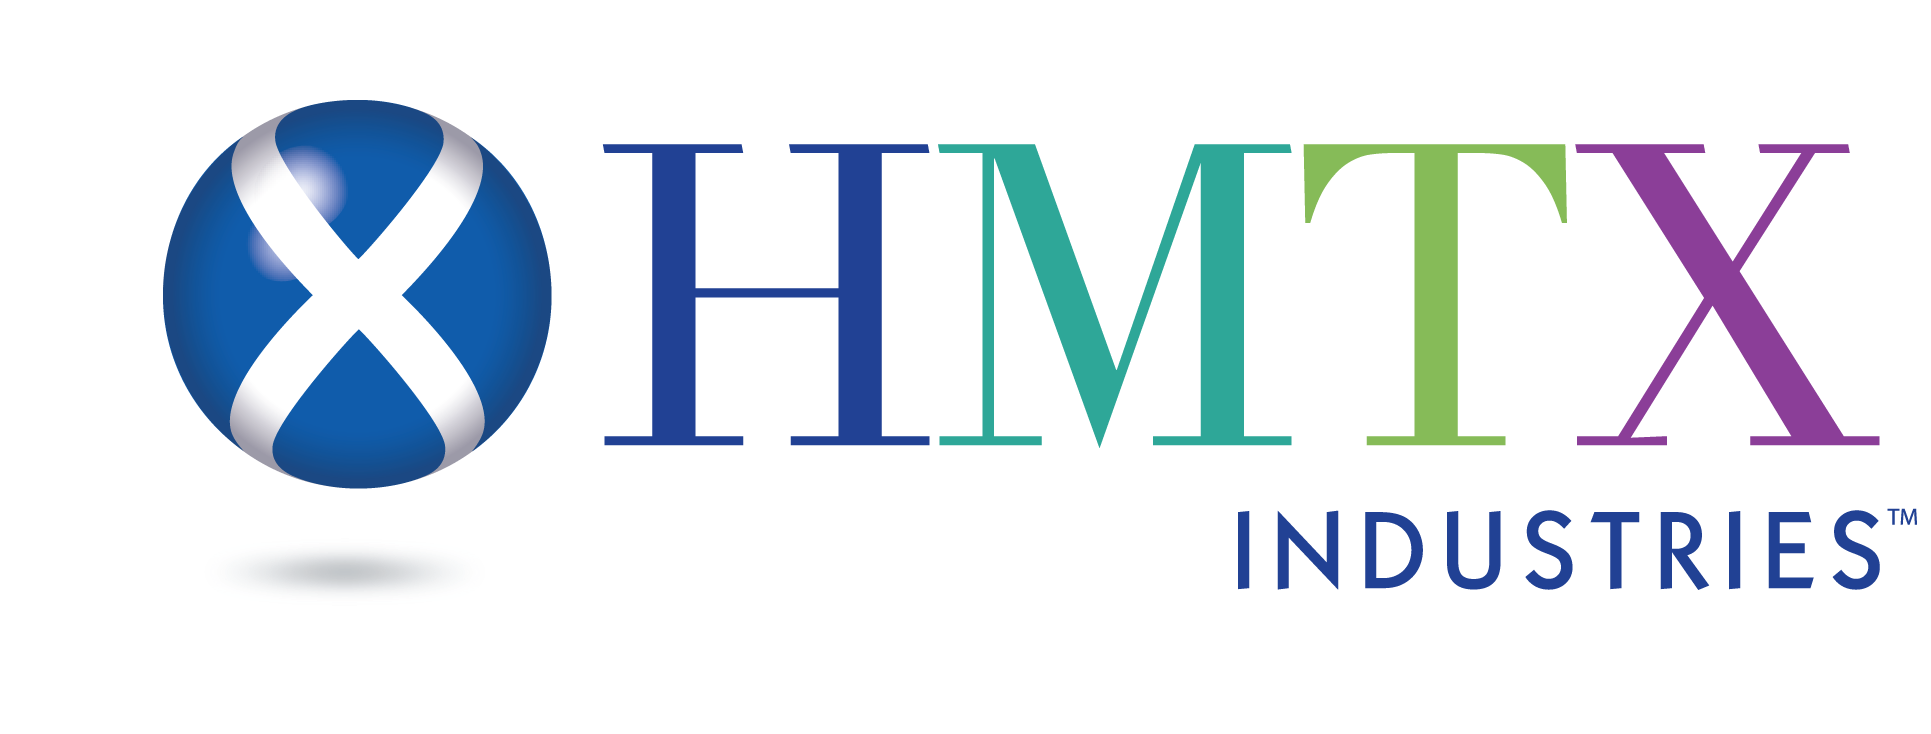 HMTX Industries logo